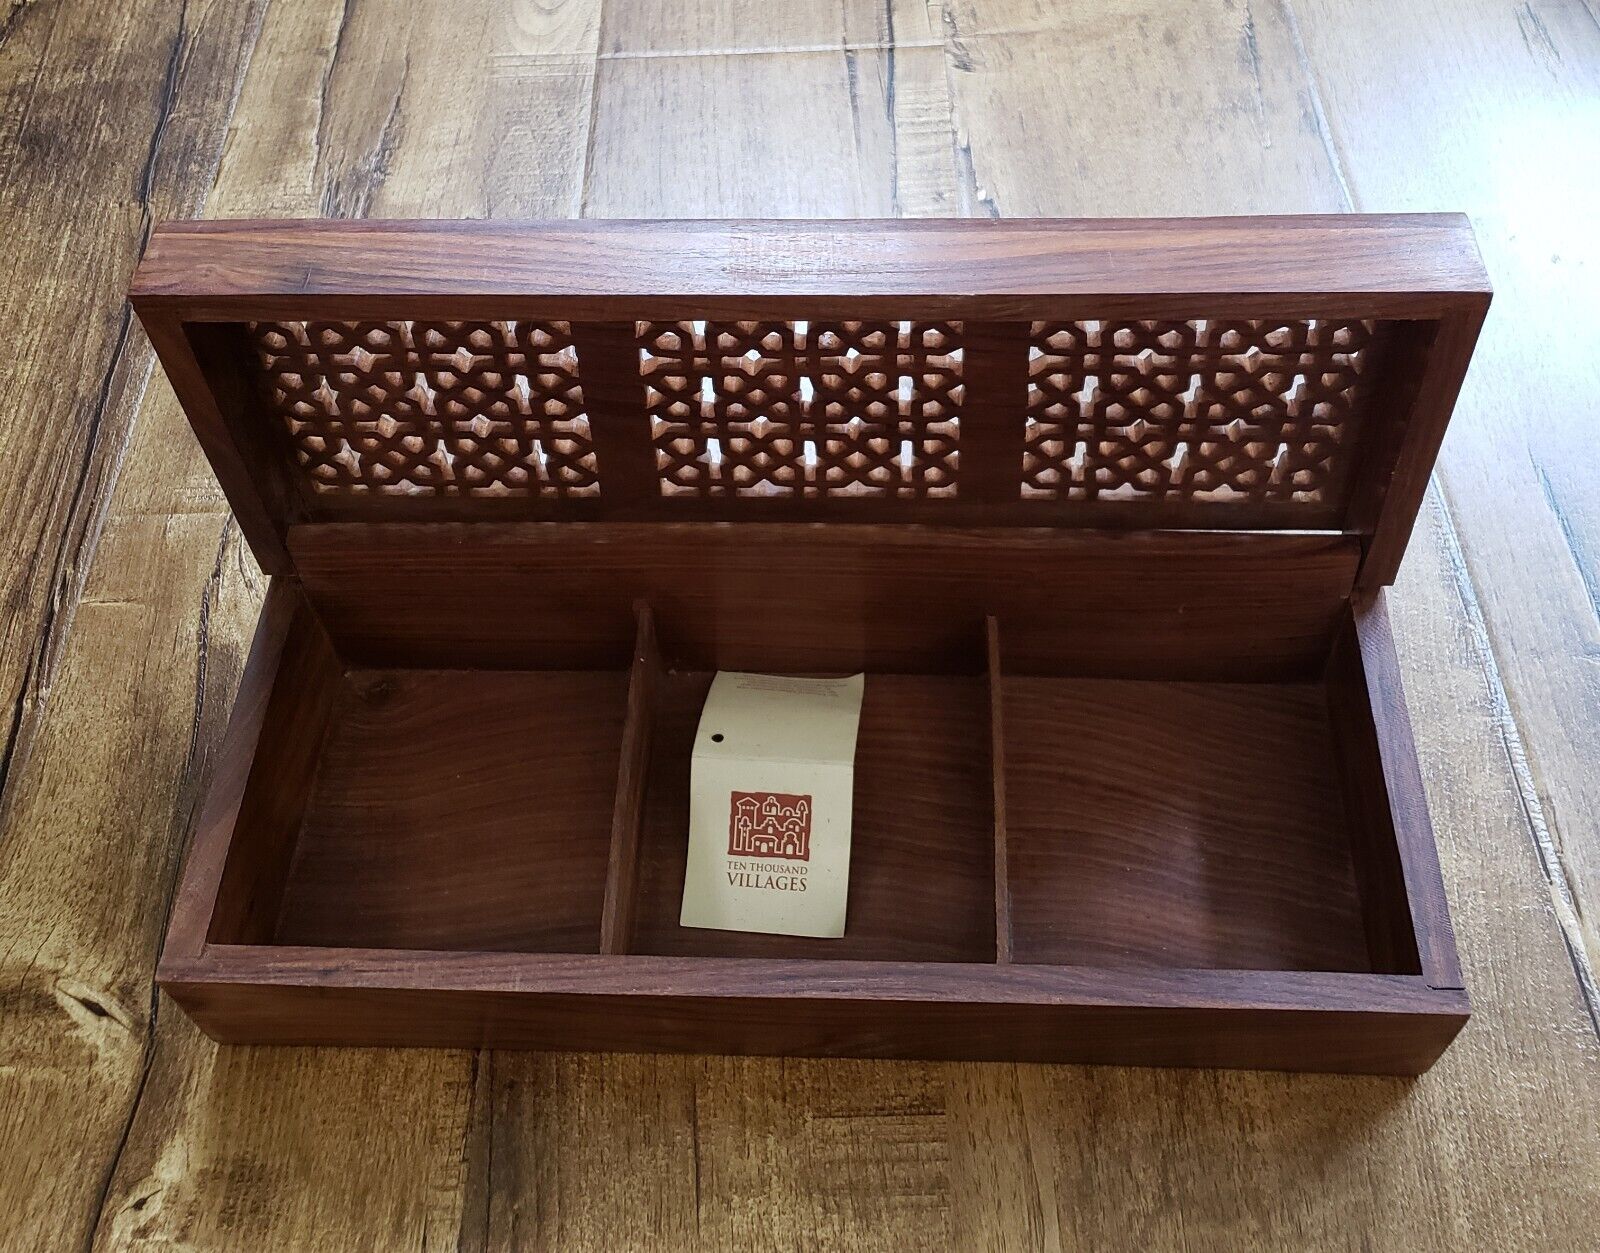 Ten Thousand Villages VTG Wooden Trinket Box Keepsake Shesham Hand Crafted India